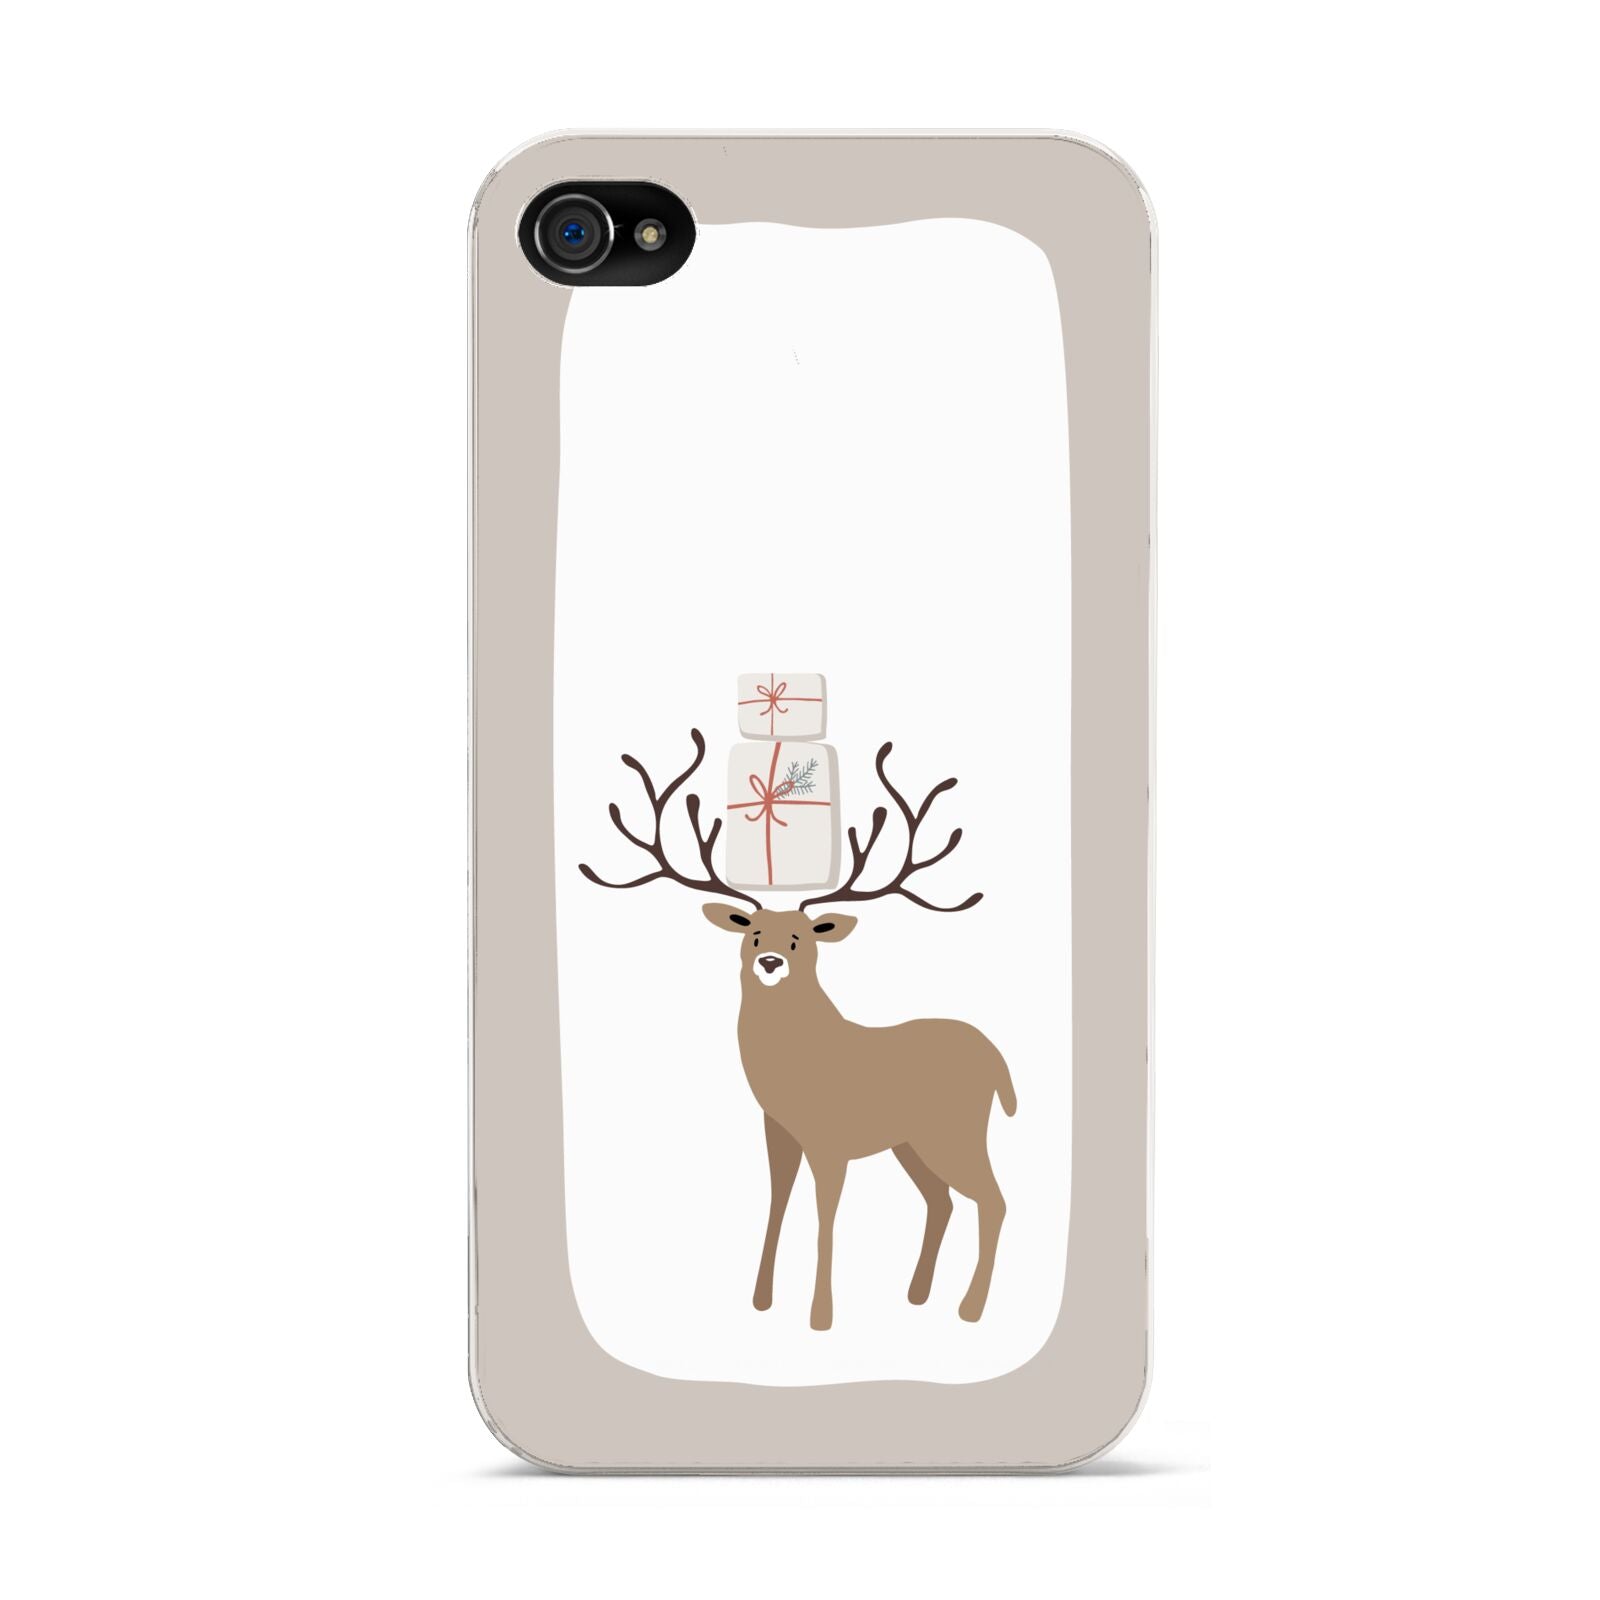 Reindeer Presents Apple iPhone 4s Case